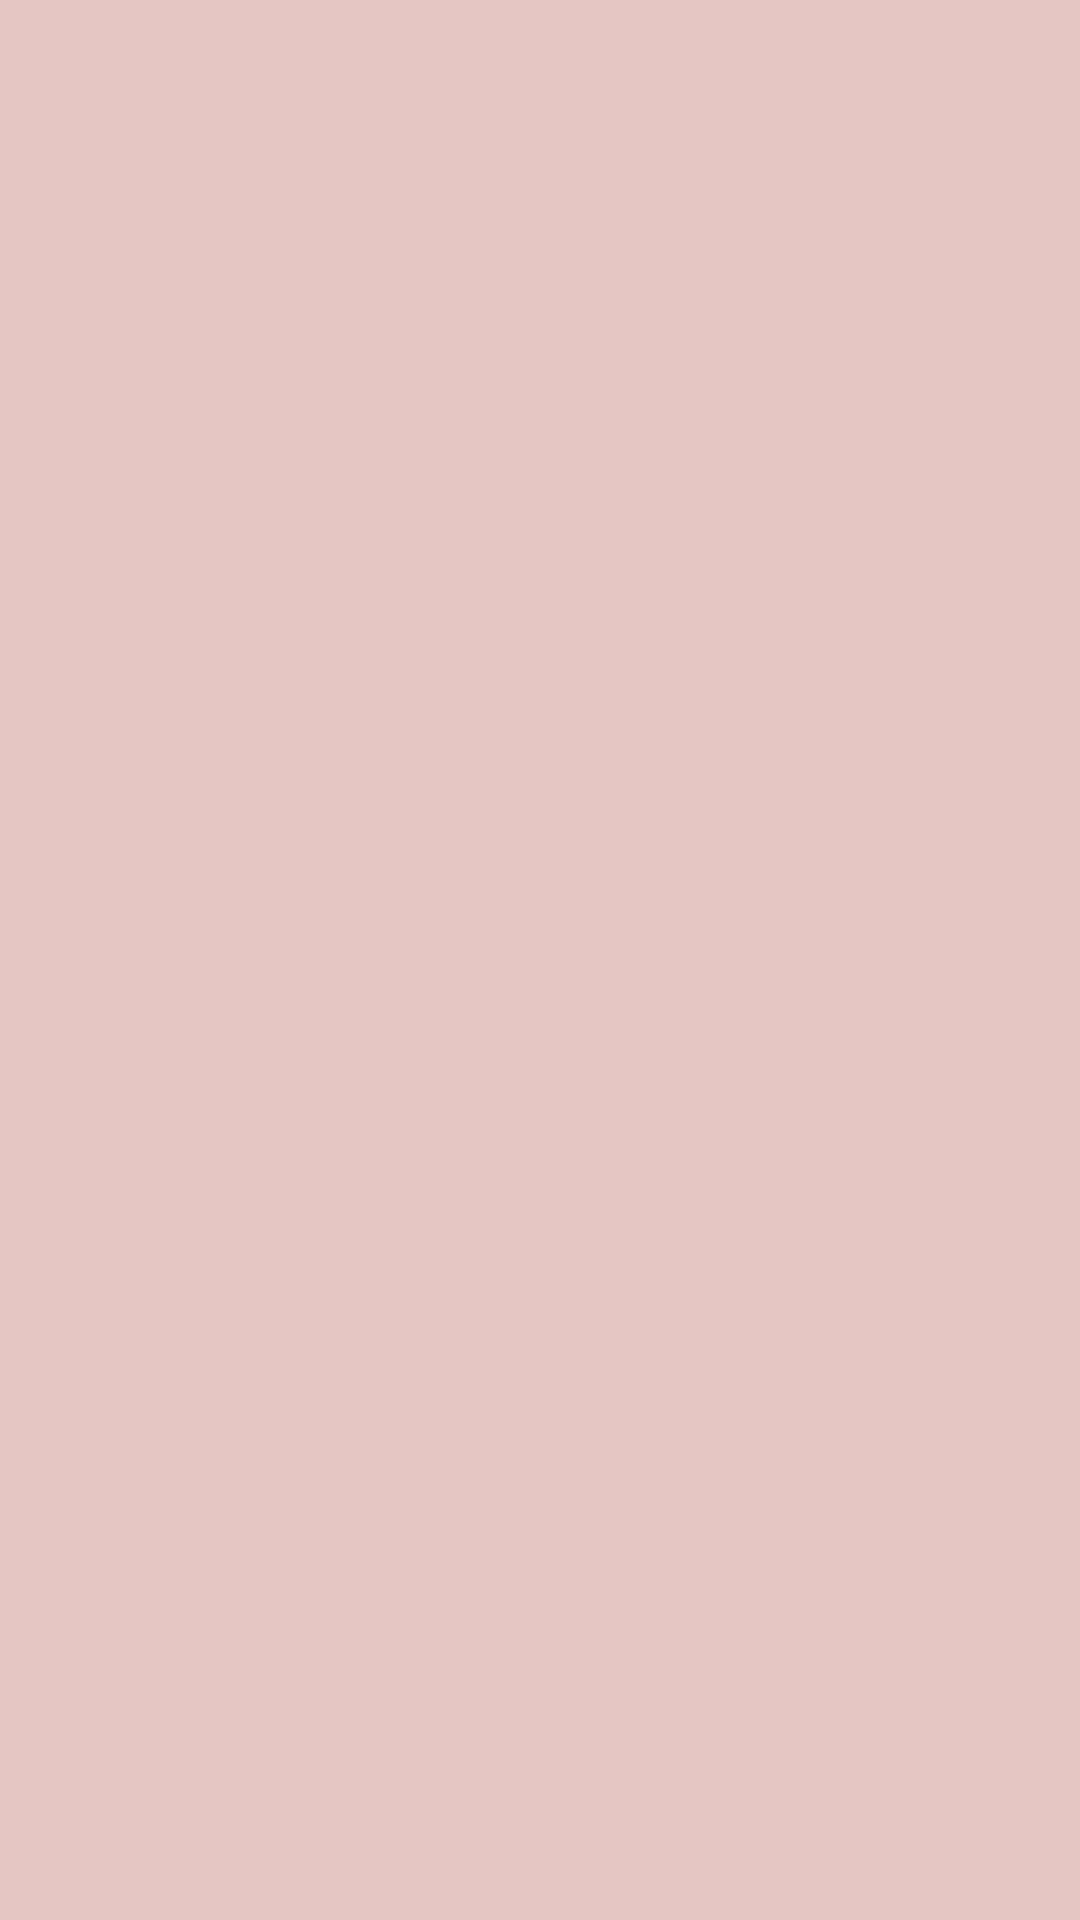 Fondode Pantalla Para Teléfono De Color Rosa En Polvo Sólido. Fondo de pantalla